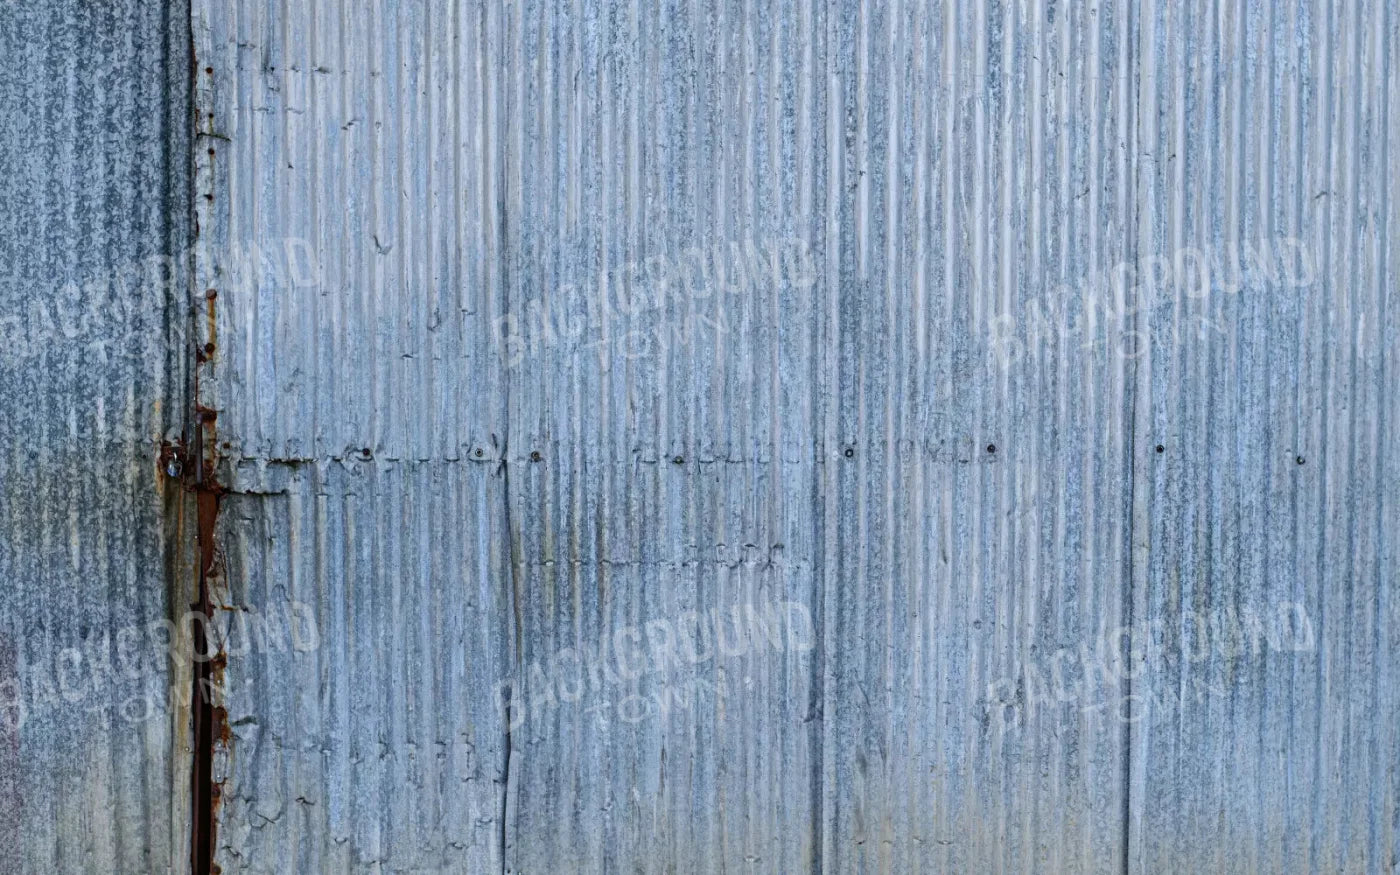 Barn Steel 14X9 Ultracloth ( 168 X 108 Inch ) Backdrop